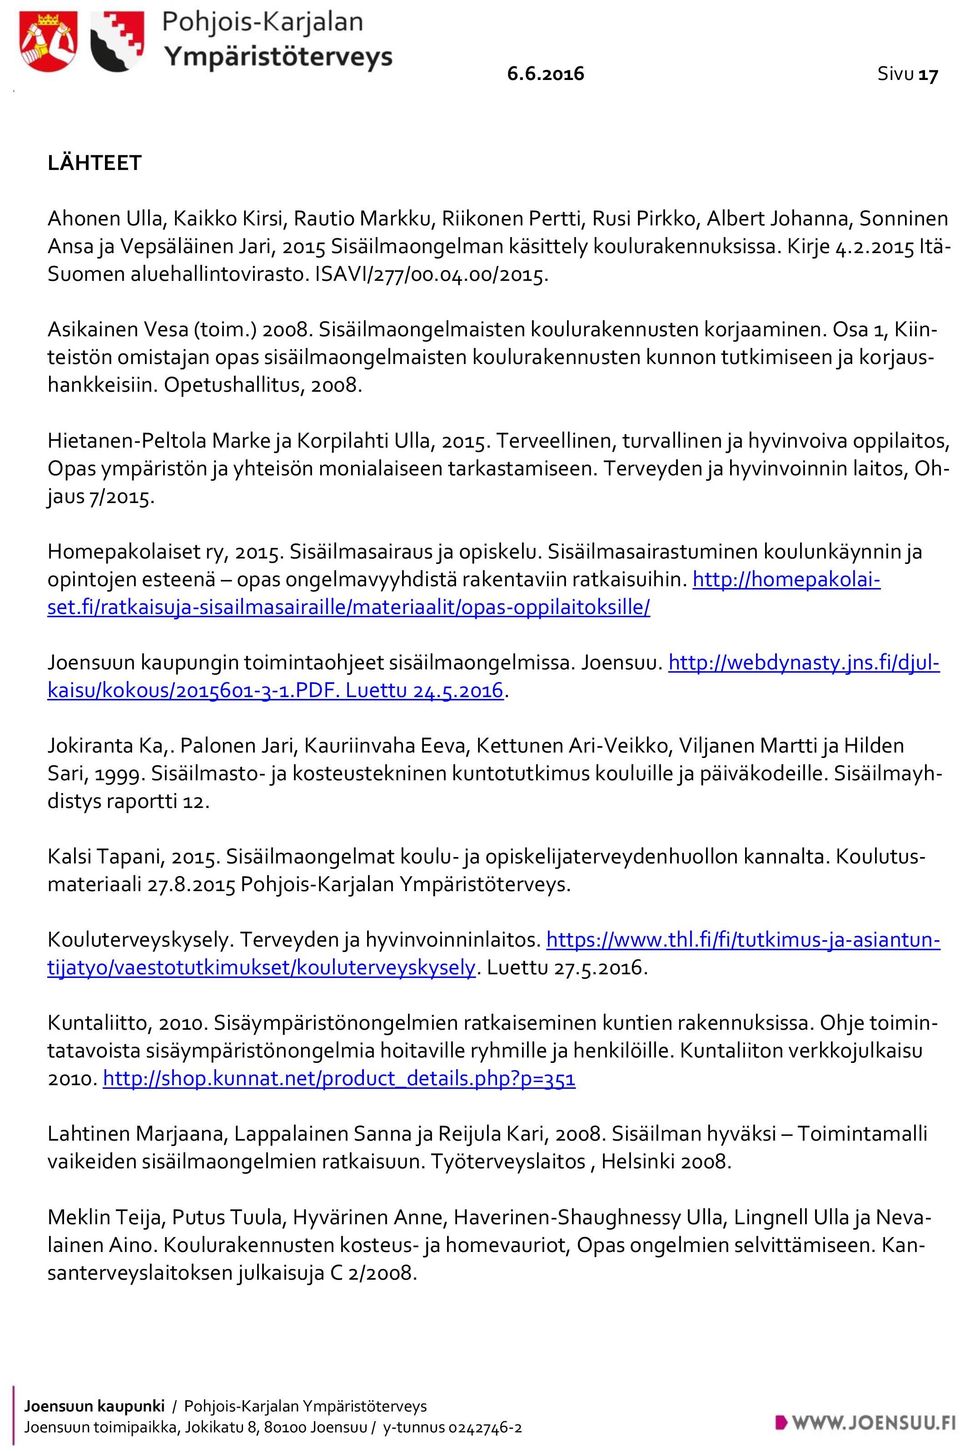 Osa 1, Kiinteistön omistajan opas sisäilmaongelmaisten koulurakennusten kunnon tutkimiseen ja korjaushankkeisiin. Opetushallitus, 2008. Hietanen-Peltola Marke ja Korpilahti Ulla, 2015.